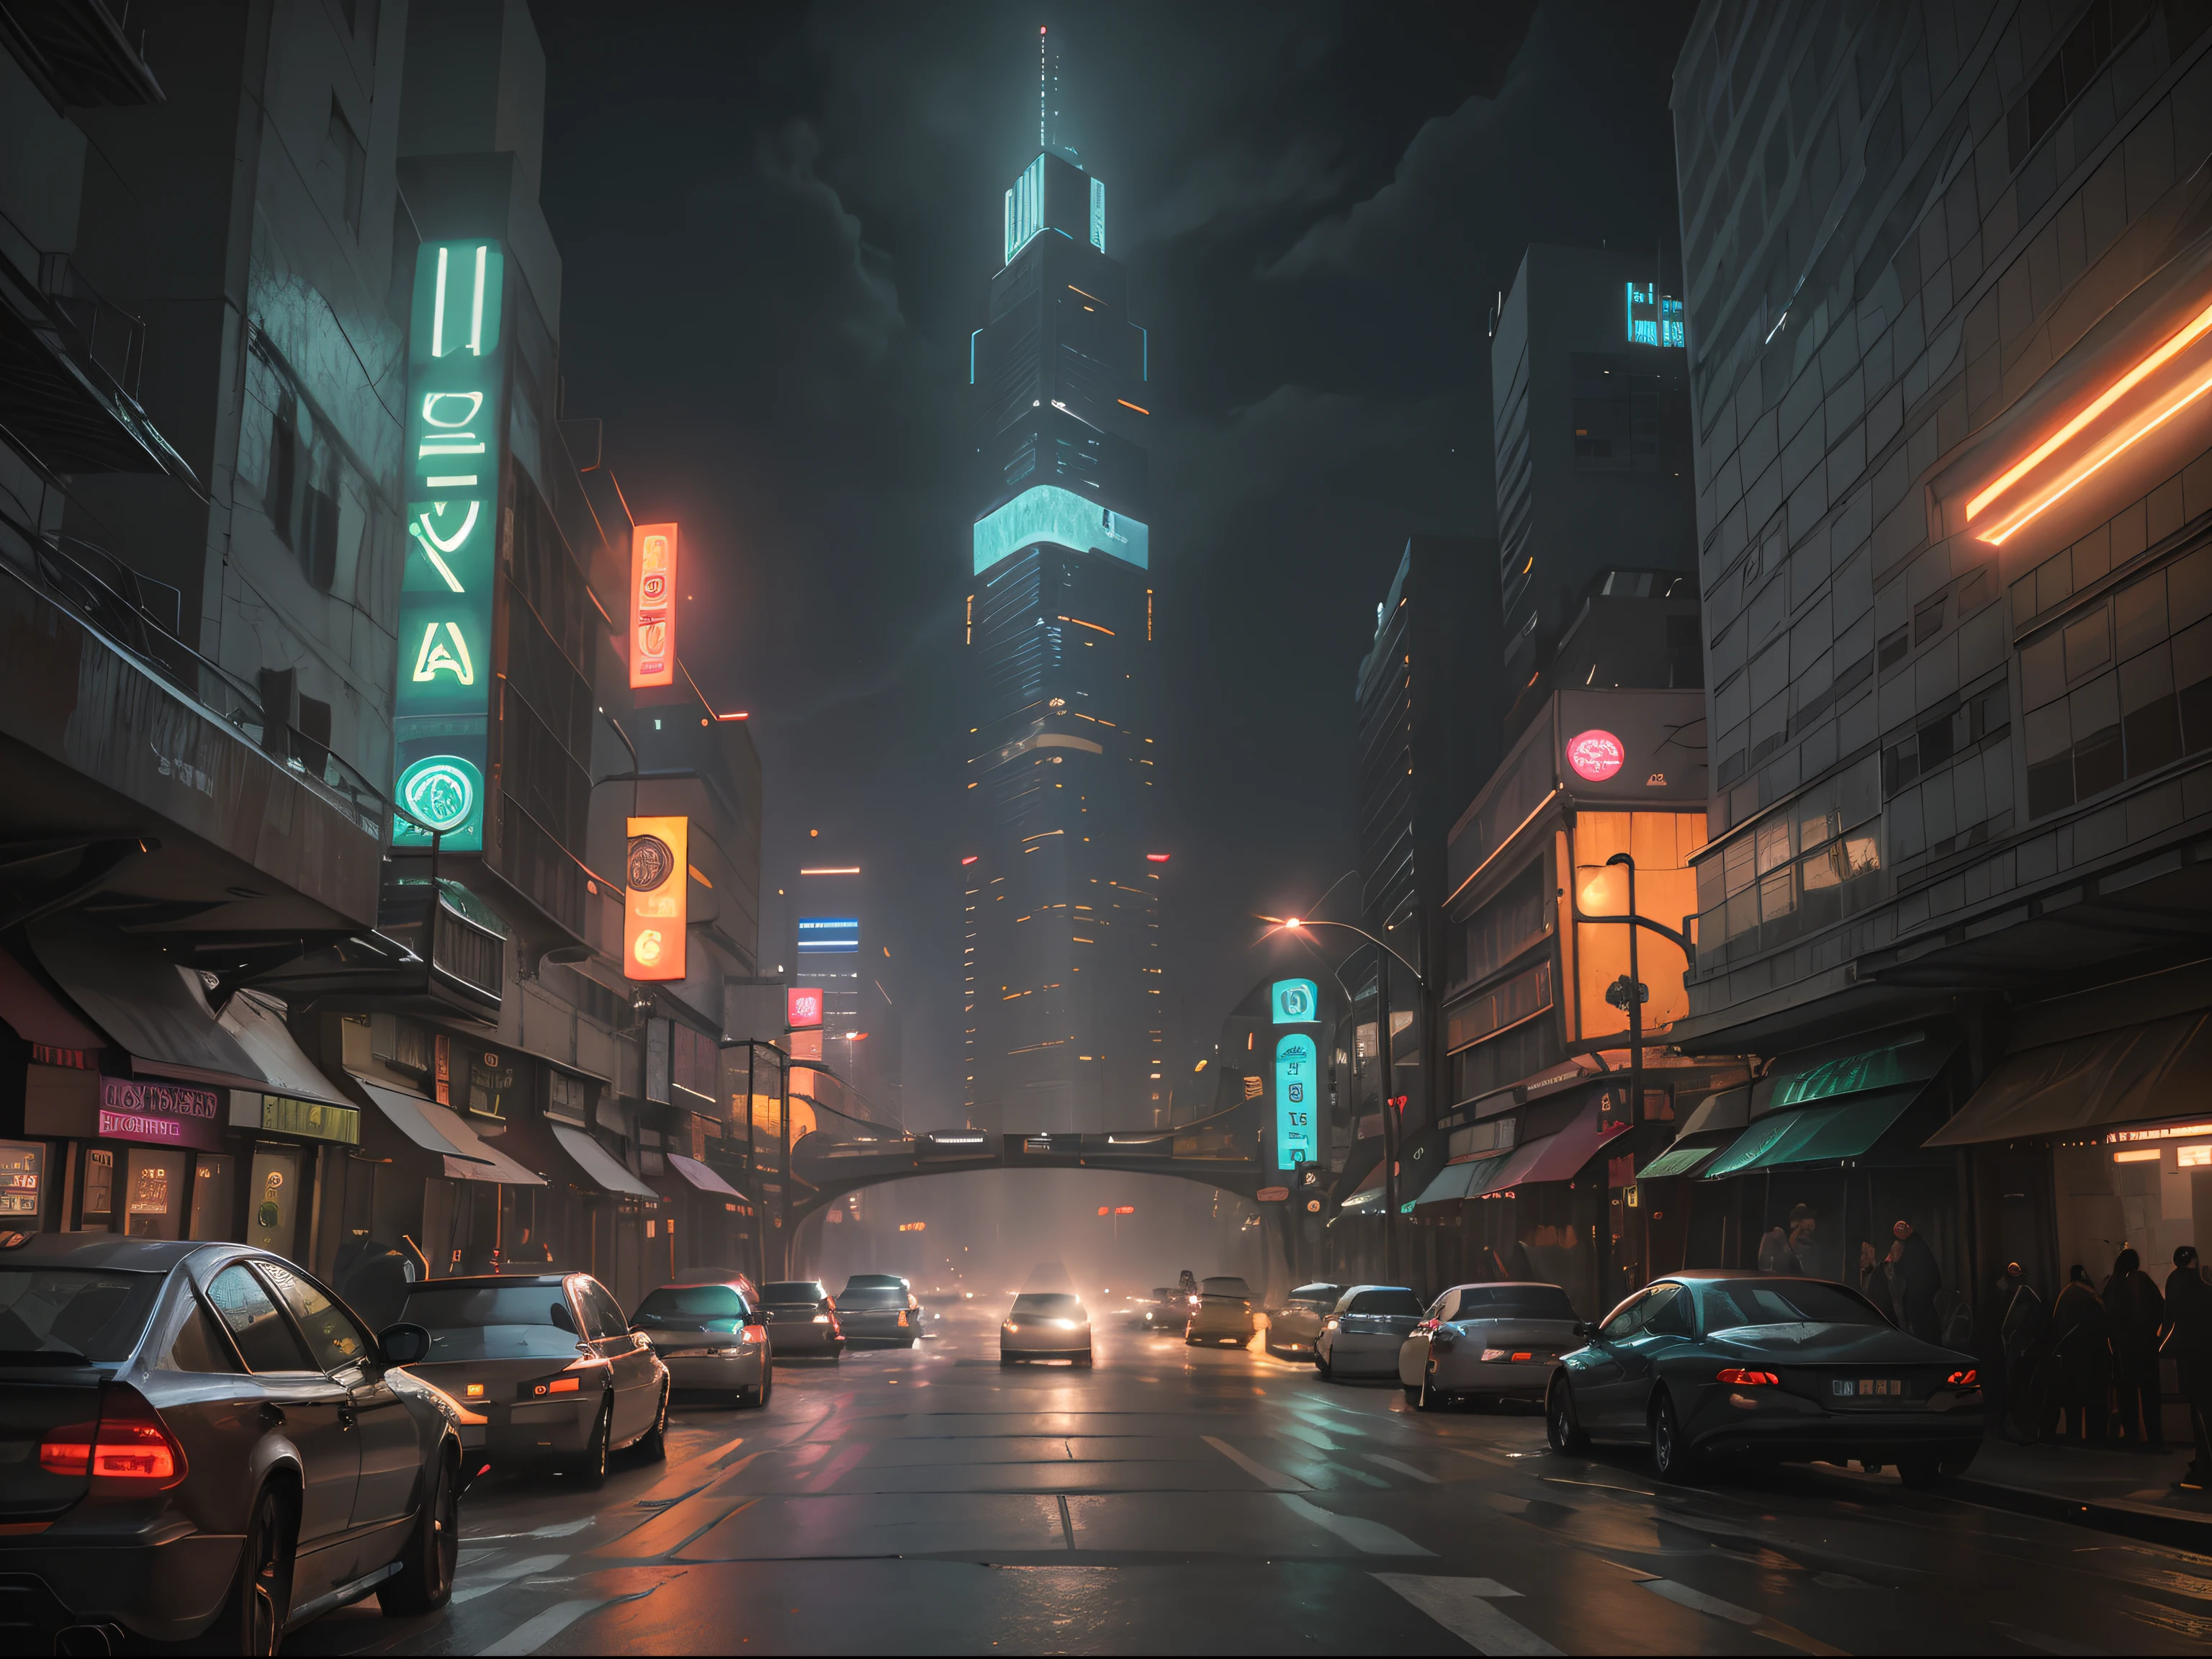 Cena de rua da paisagem urbana de Cyberpunk Blade Runner com arranha-céus imponentes, ((sinais de néon brilhantes)) e luzes LED, tráfego com (carros cyberpunk futuristas) e carros voadores no céu, cores brilhantes contrastando com a atmosfera escura, (iluminação cinematográfica), extremamente detalhado.